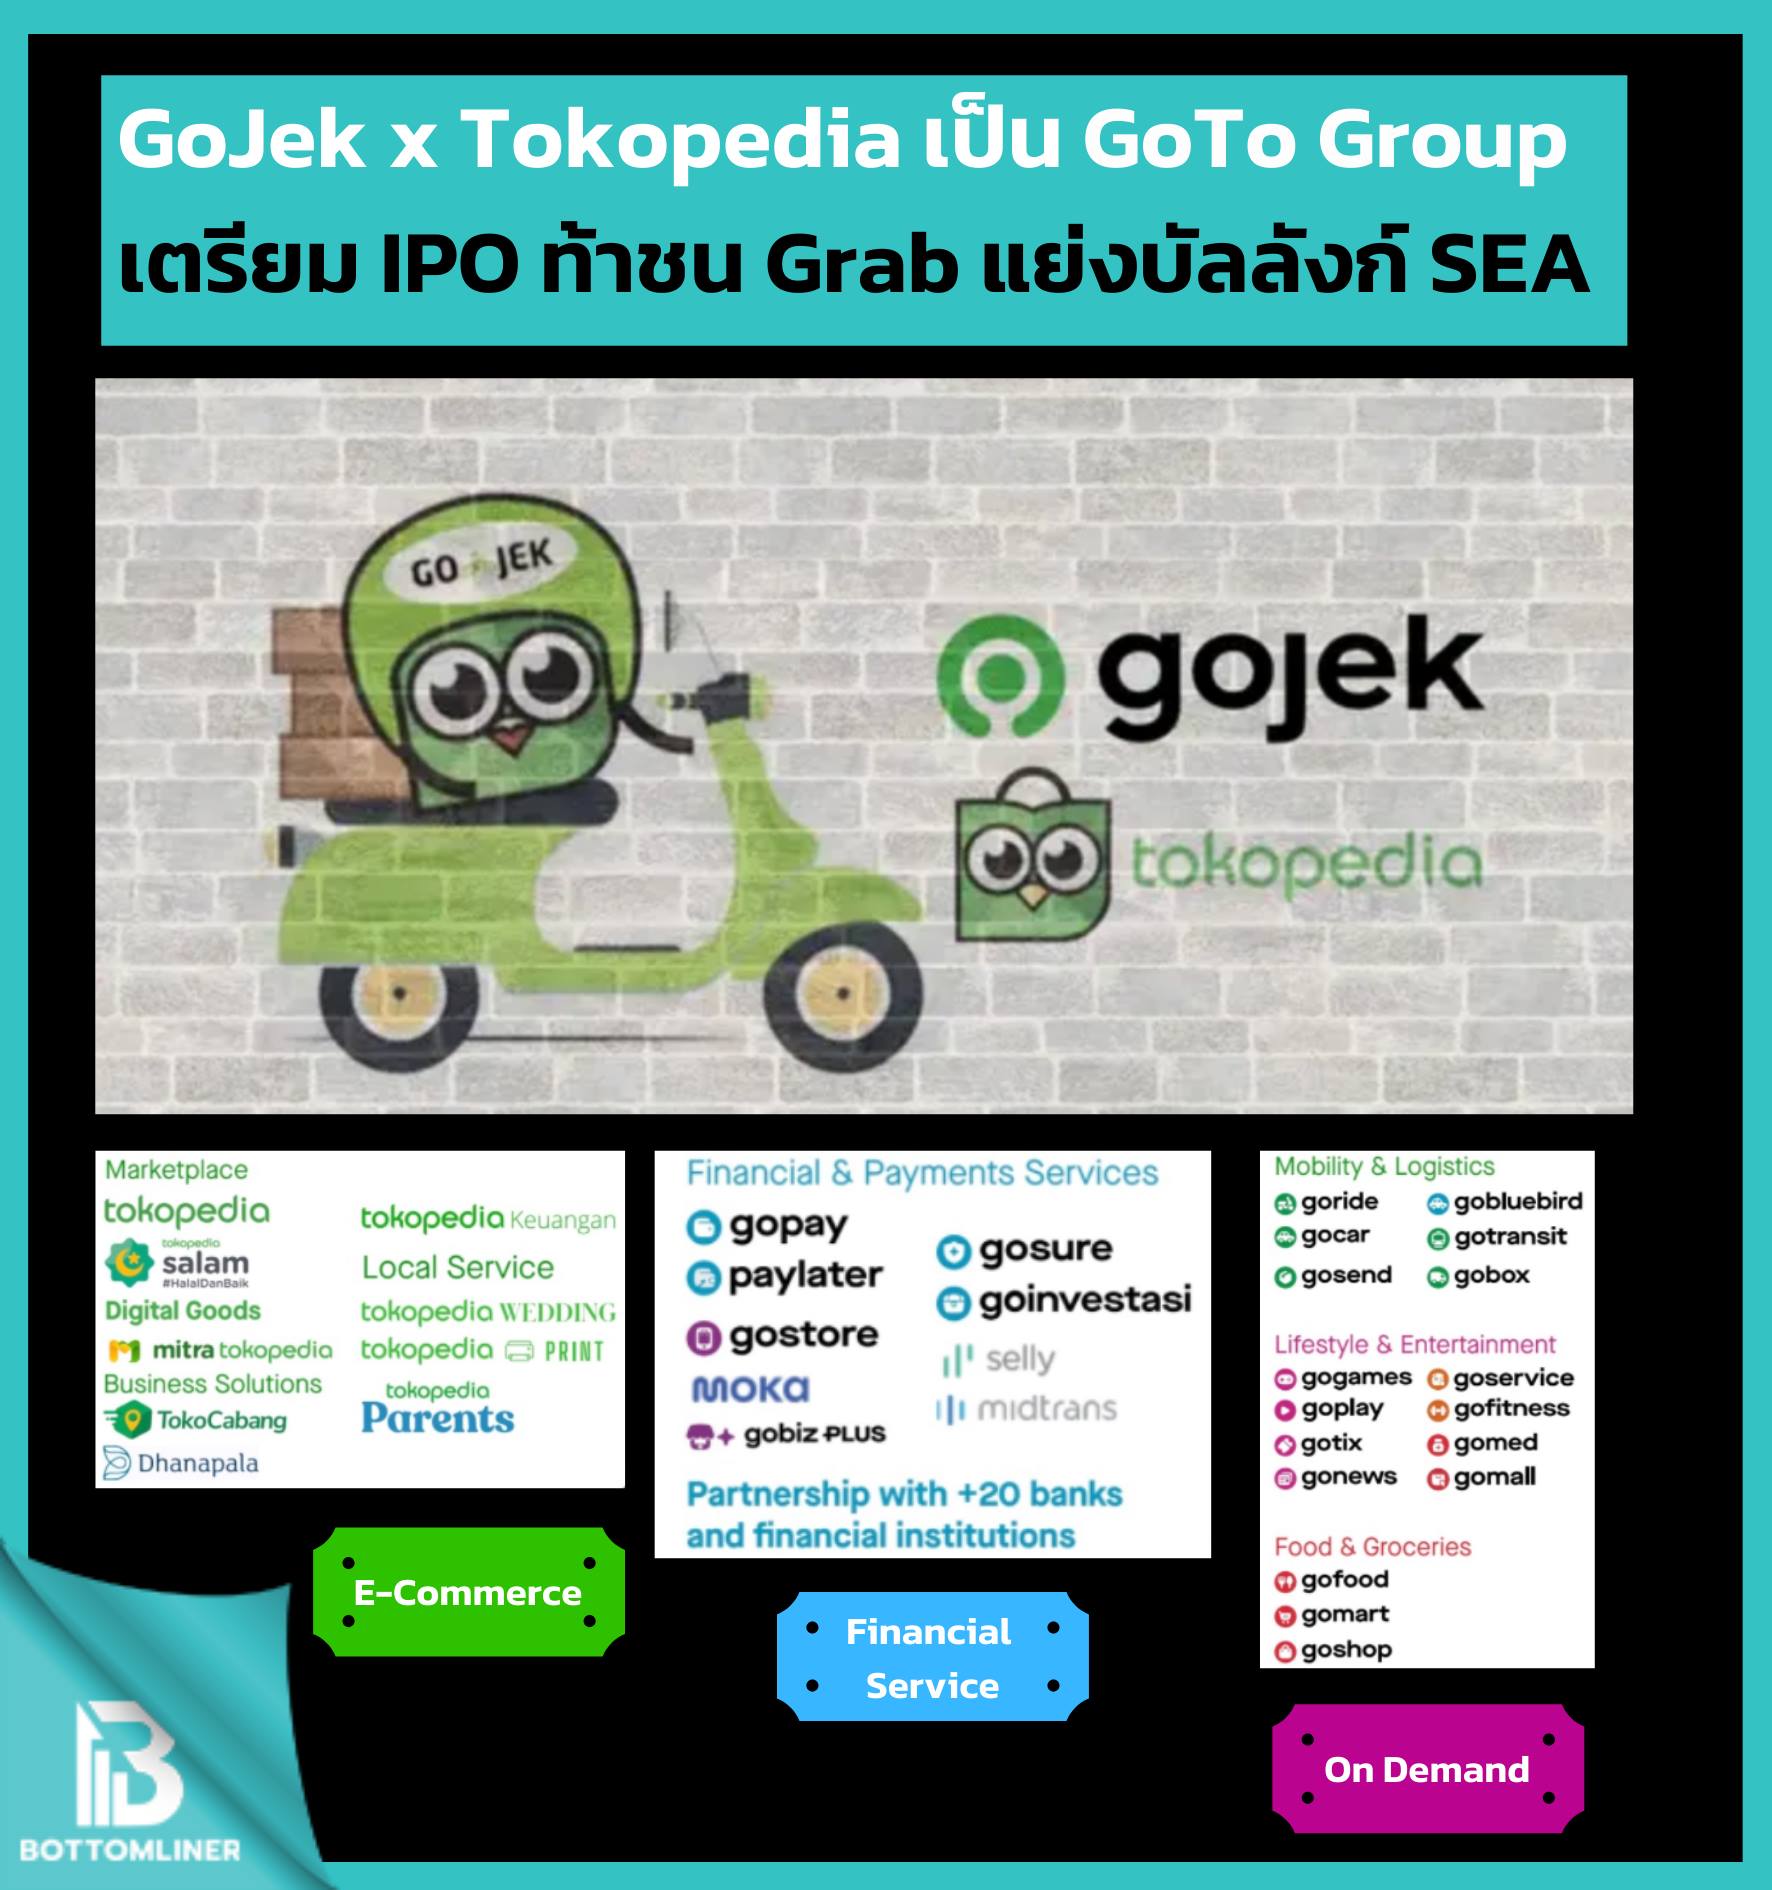 Gojek x Tokopedia ควบรวมกิจการเป็น GoTo Group เตรียม IPO ท้าชน Grab หวังขึ้นบัลลังก์อันดับ 1 ในเอเชียตะวันออกเฉียงใต้